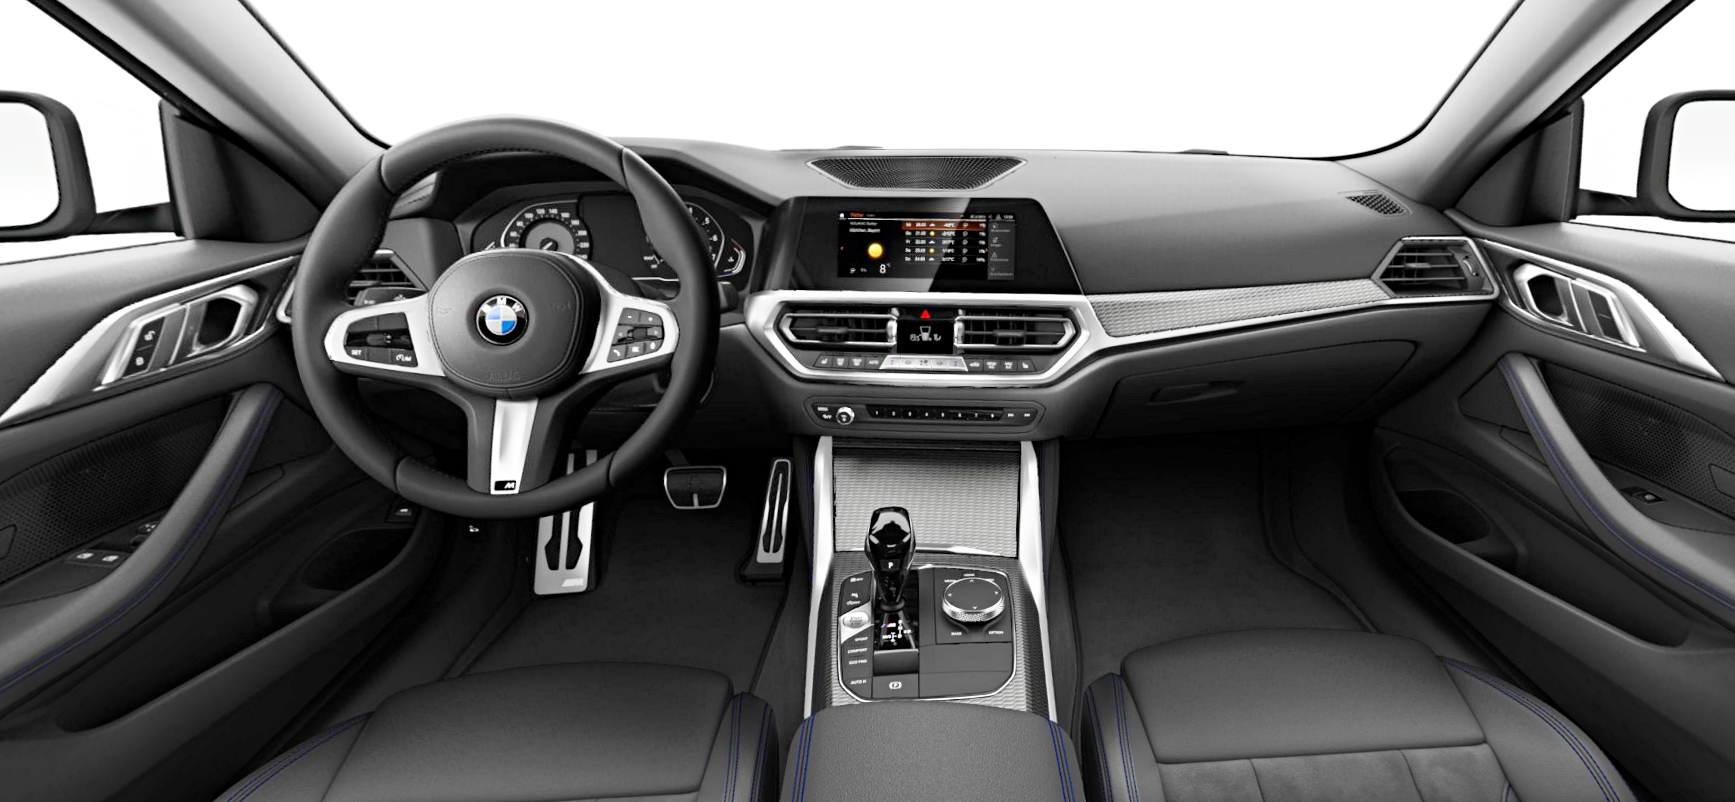 Аналоговые приборы BMW живы! В базе на новой «четвёрке»